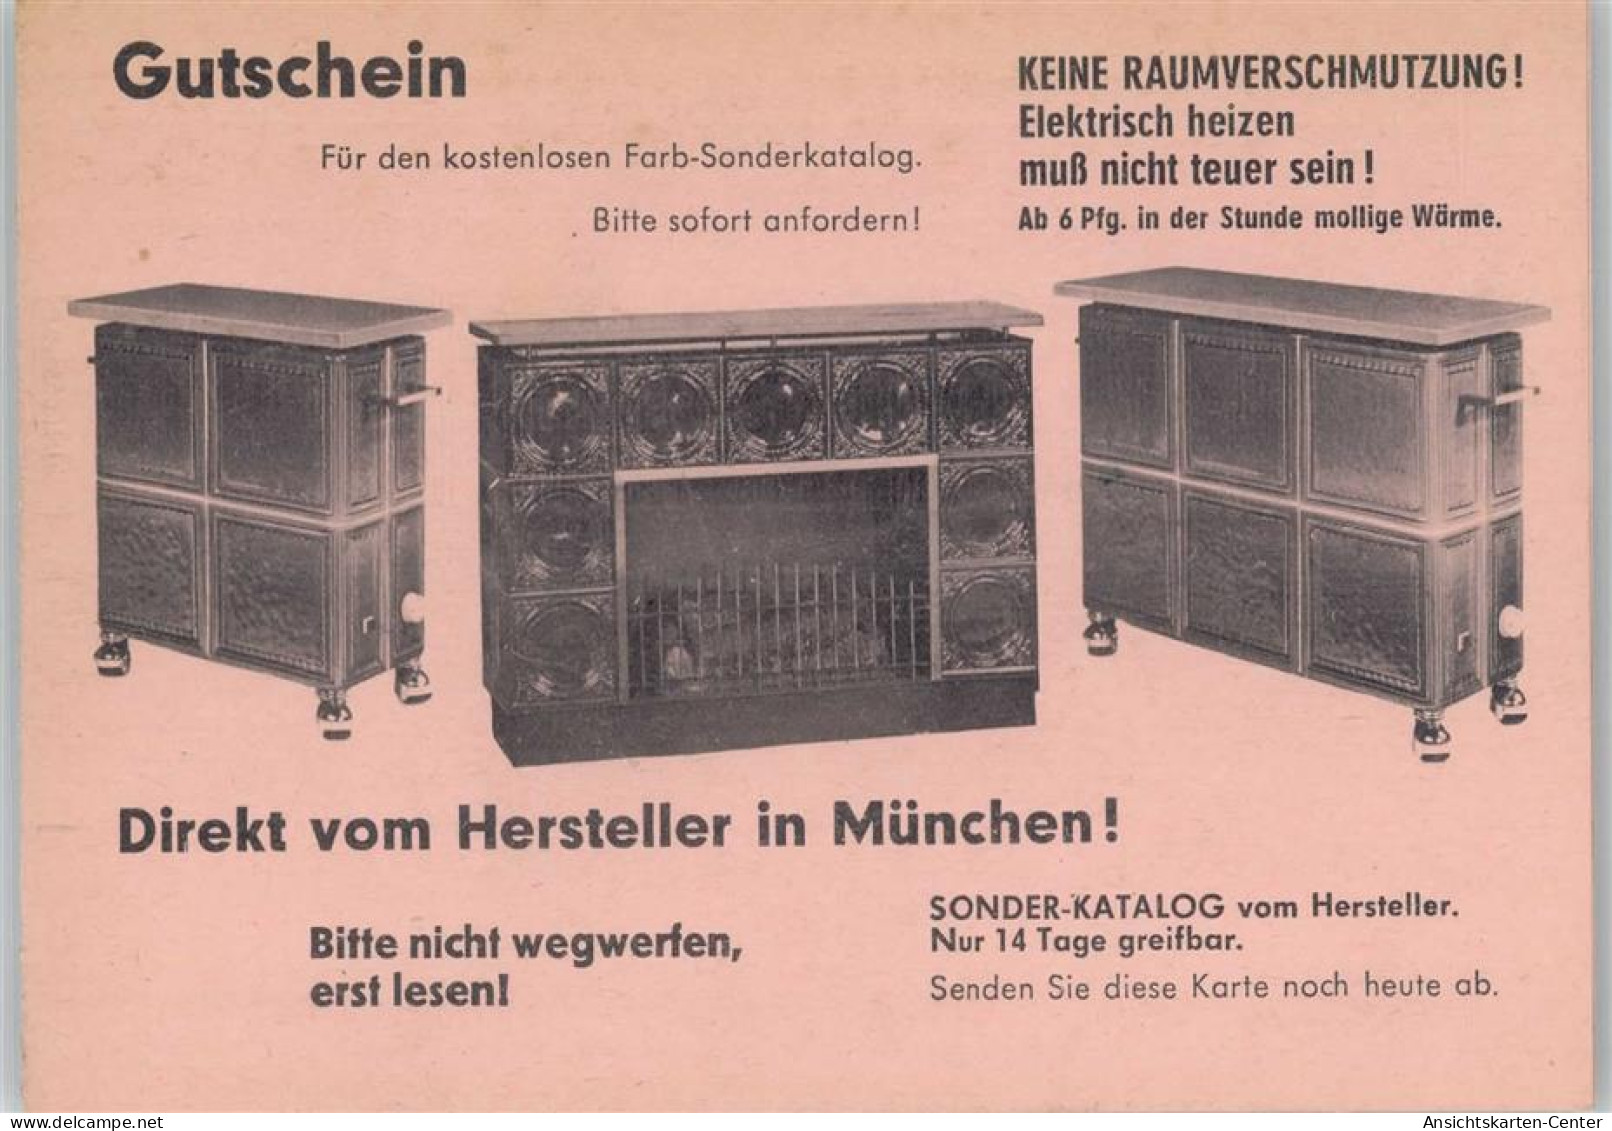 12006207 - Werbung Kachelofen - Gutschein - Advertising